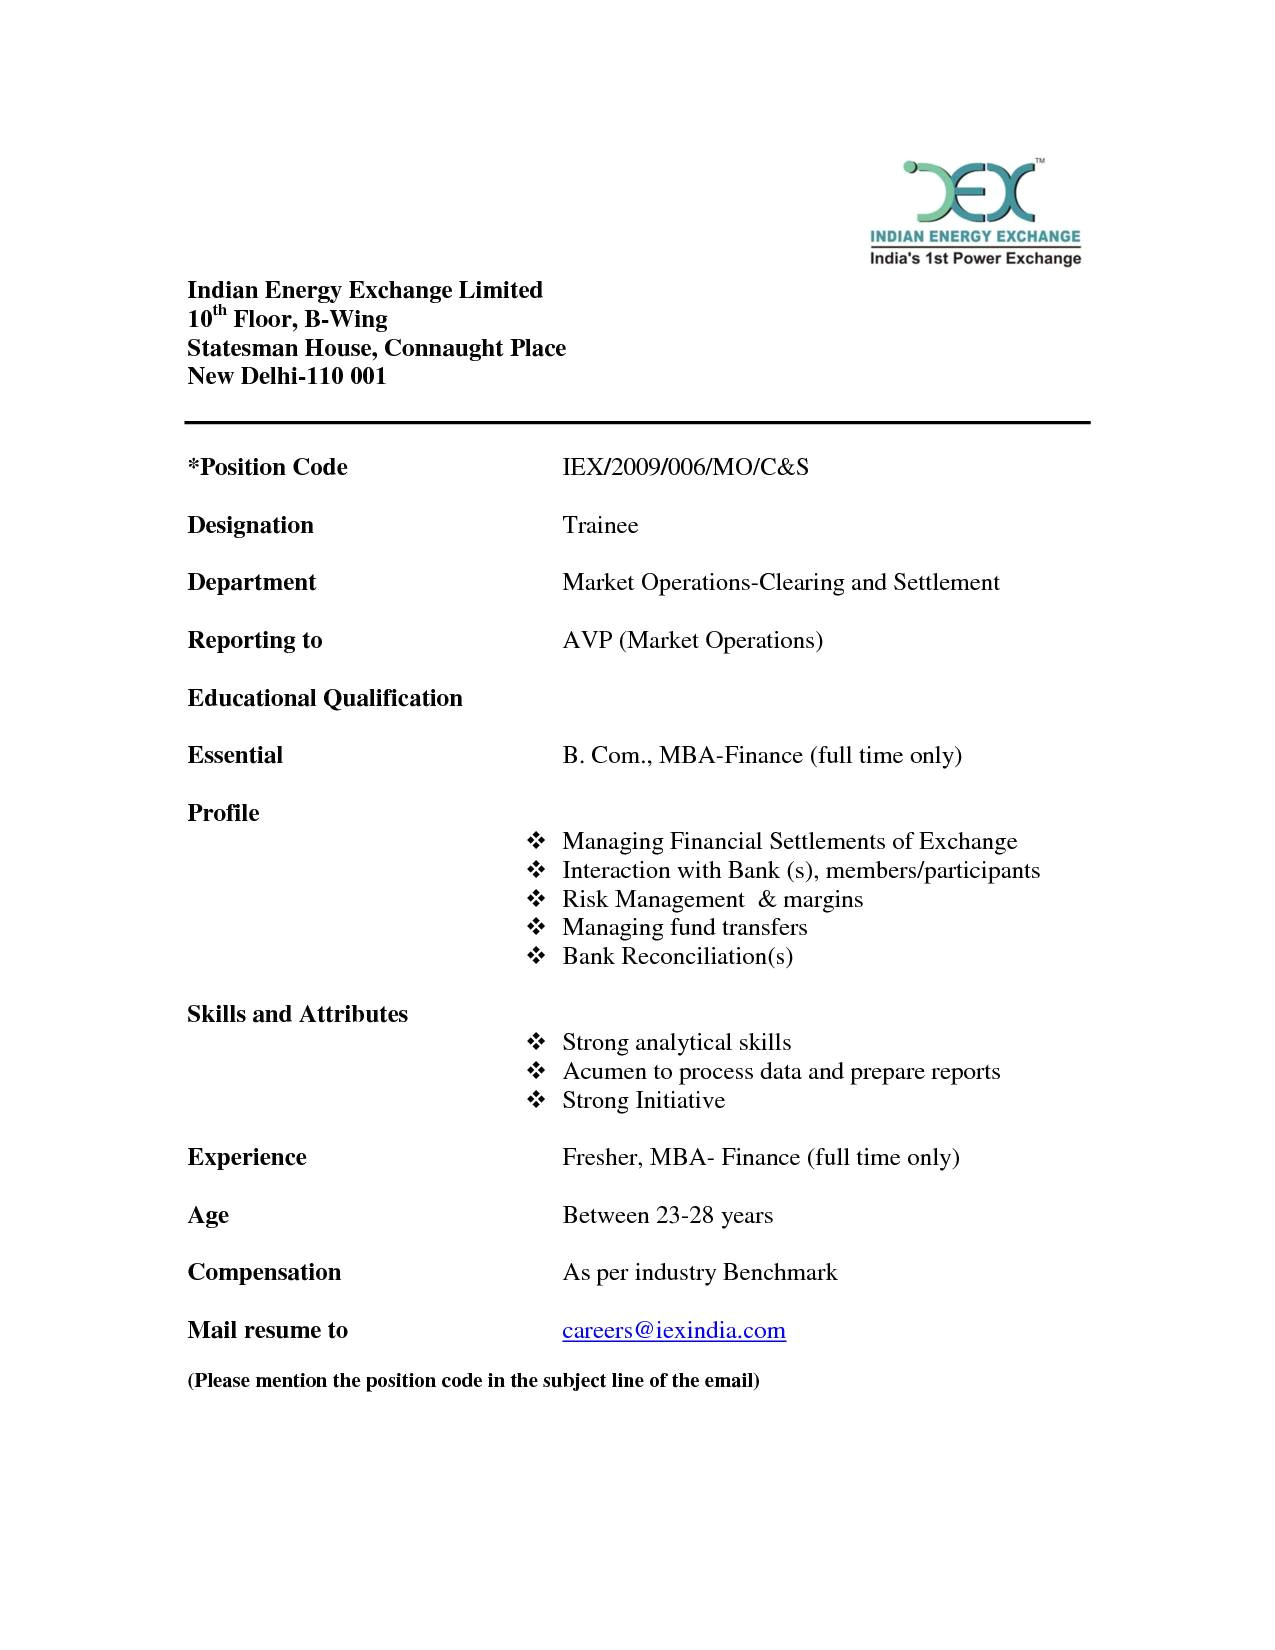 mba sample resume for freshers finance fresh cover letter resume format for mba fresher resume format for mba